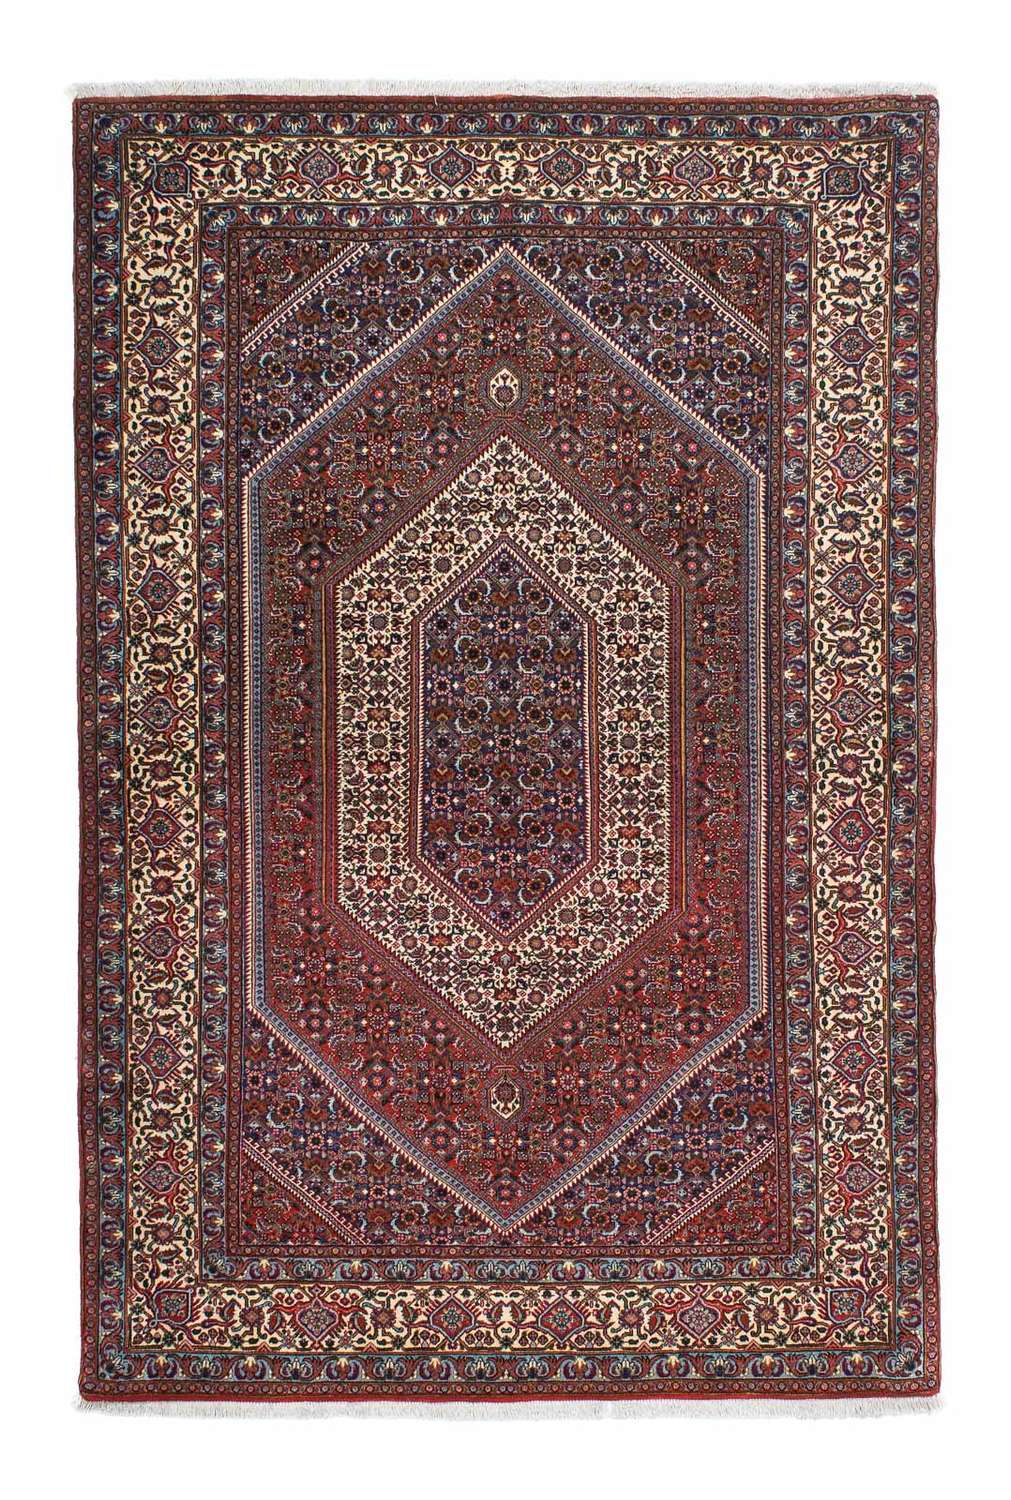 Tapis persan - Bidjar - 197 x 133 cm - multicolore